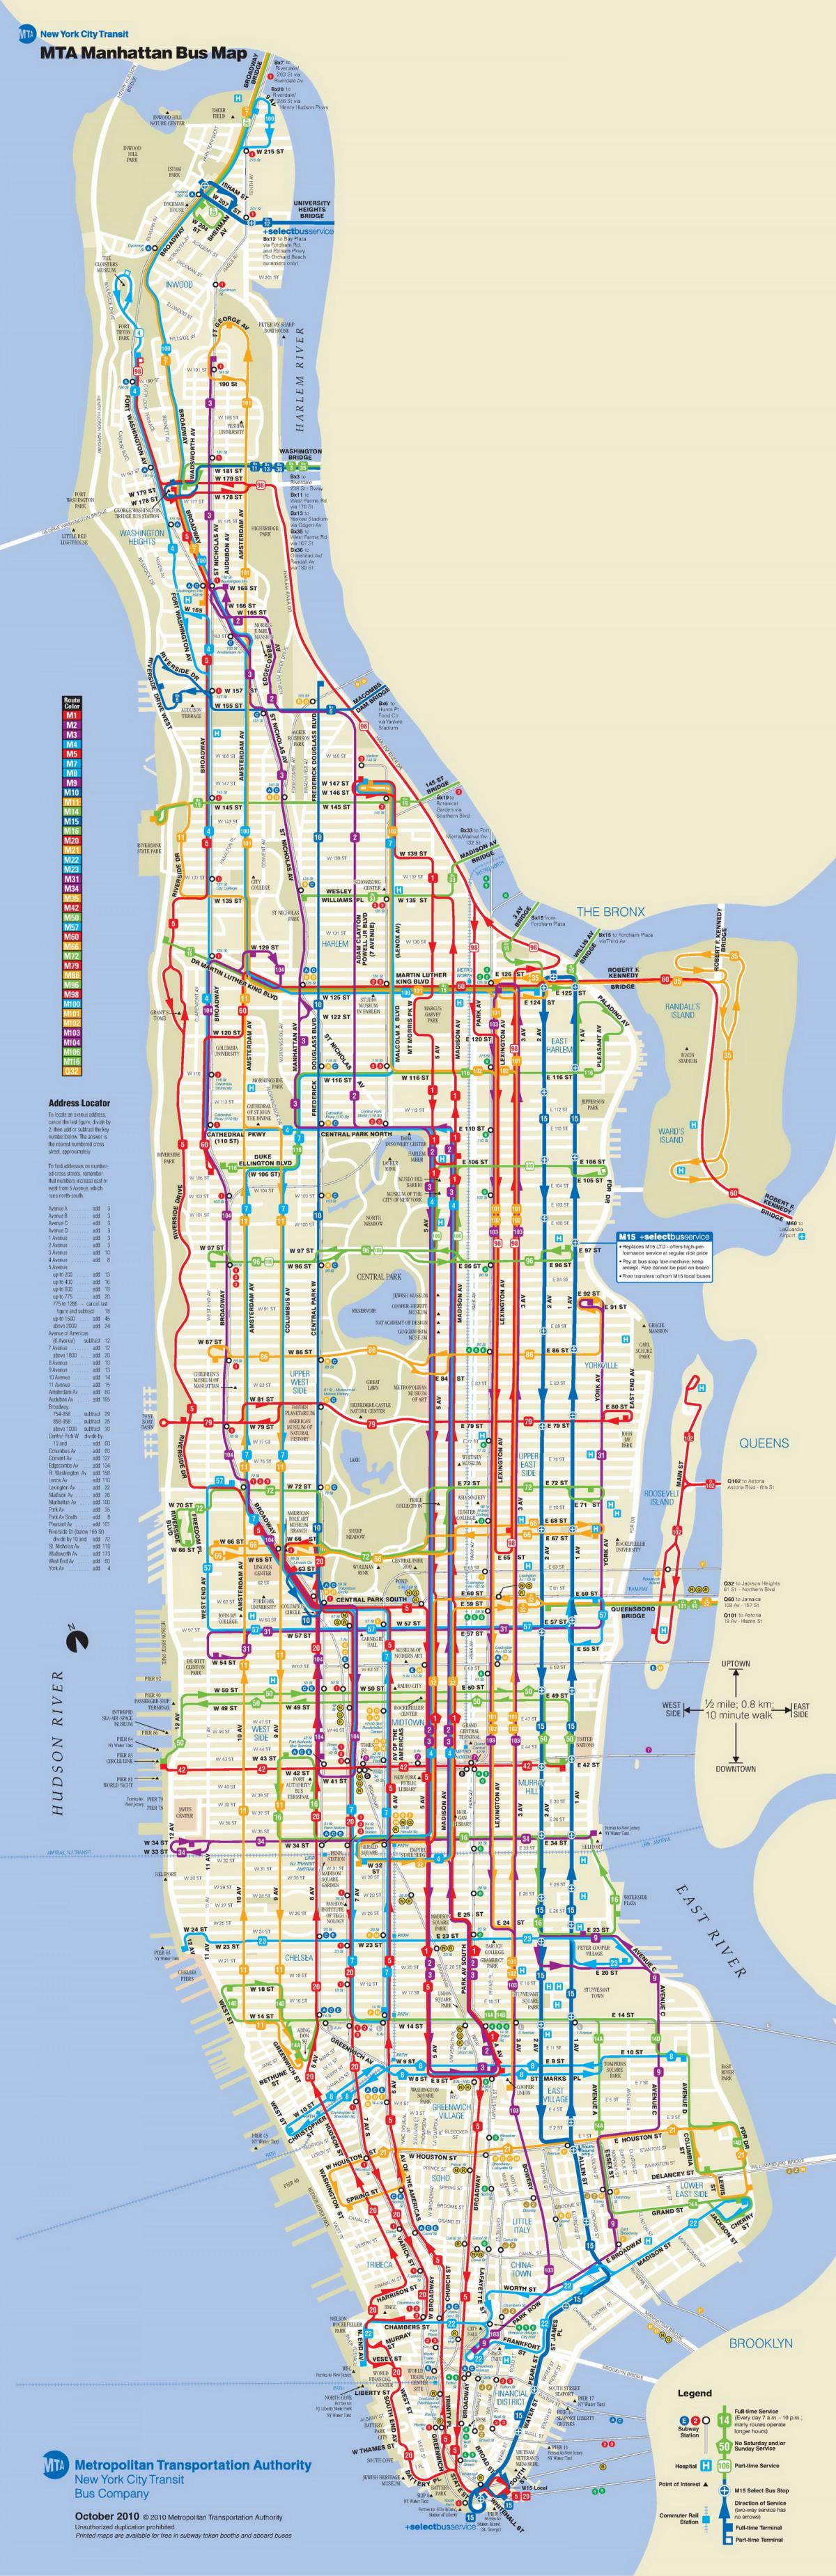 MTA حافلة خريطة مانهاتن